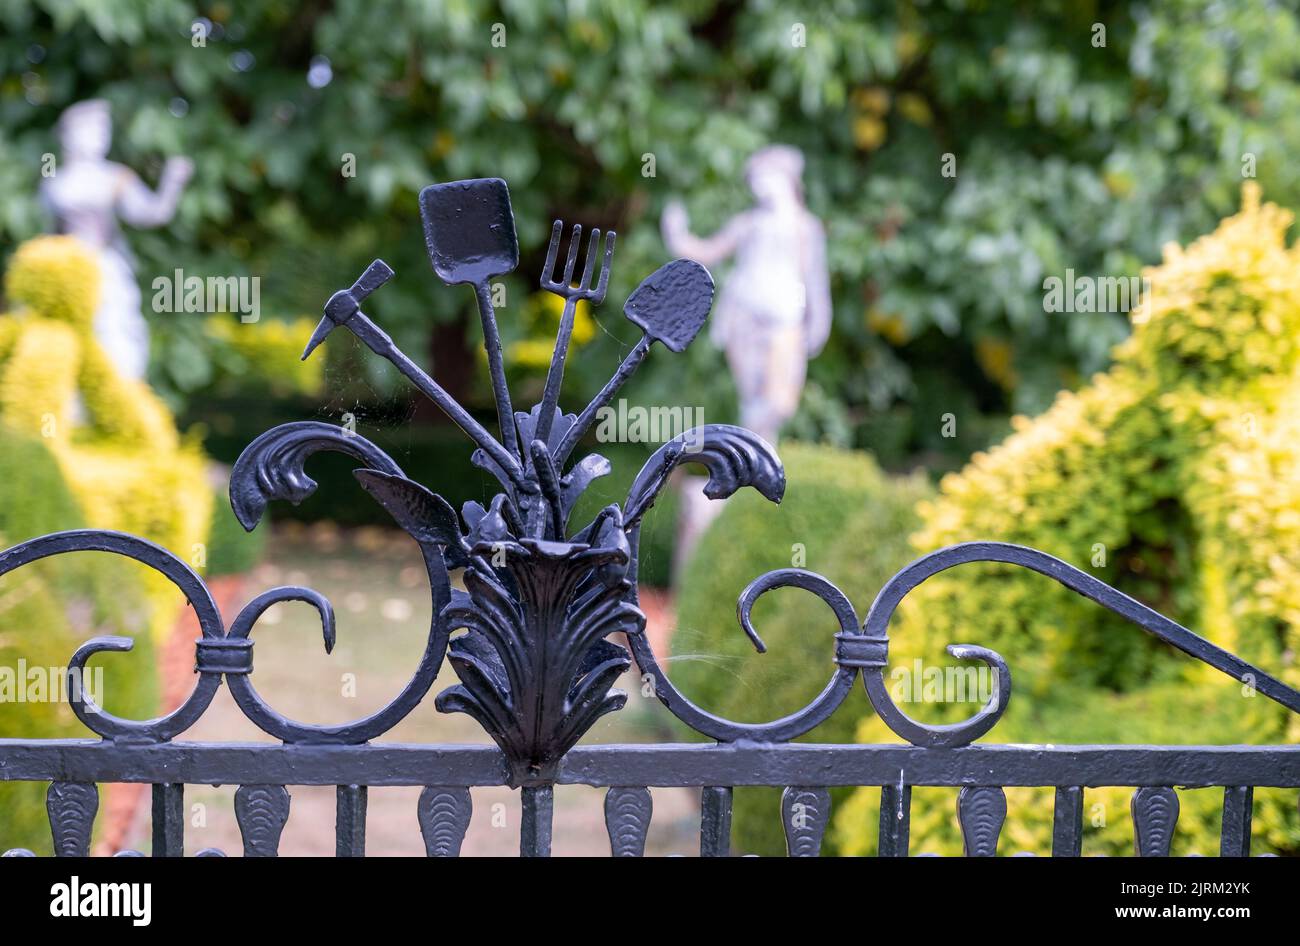 Dettagli in ferro umoranti su una delle porte del giardino a Eythrope Gardens, nella tenuta di Waddesdon Manor. Foto Stock